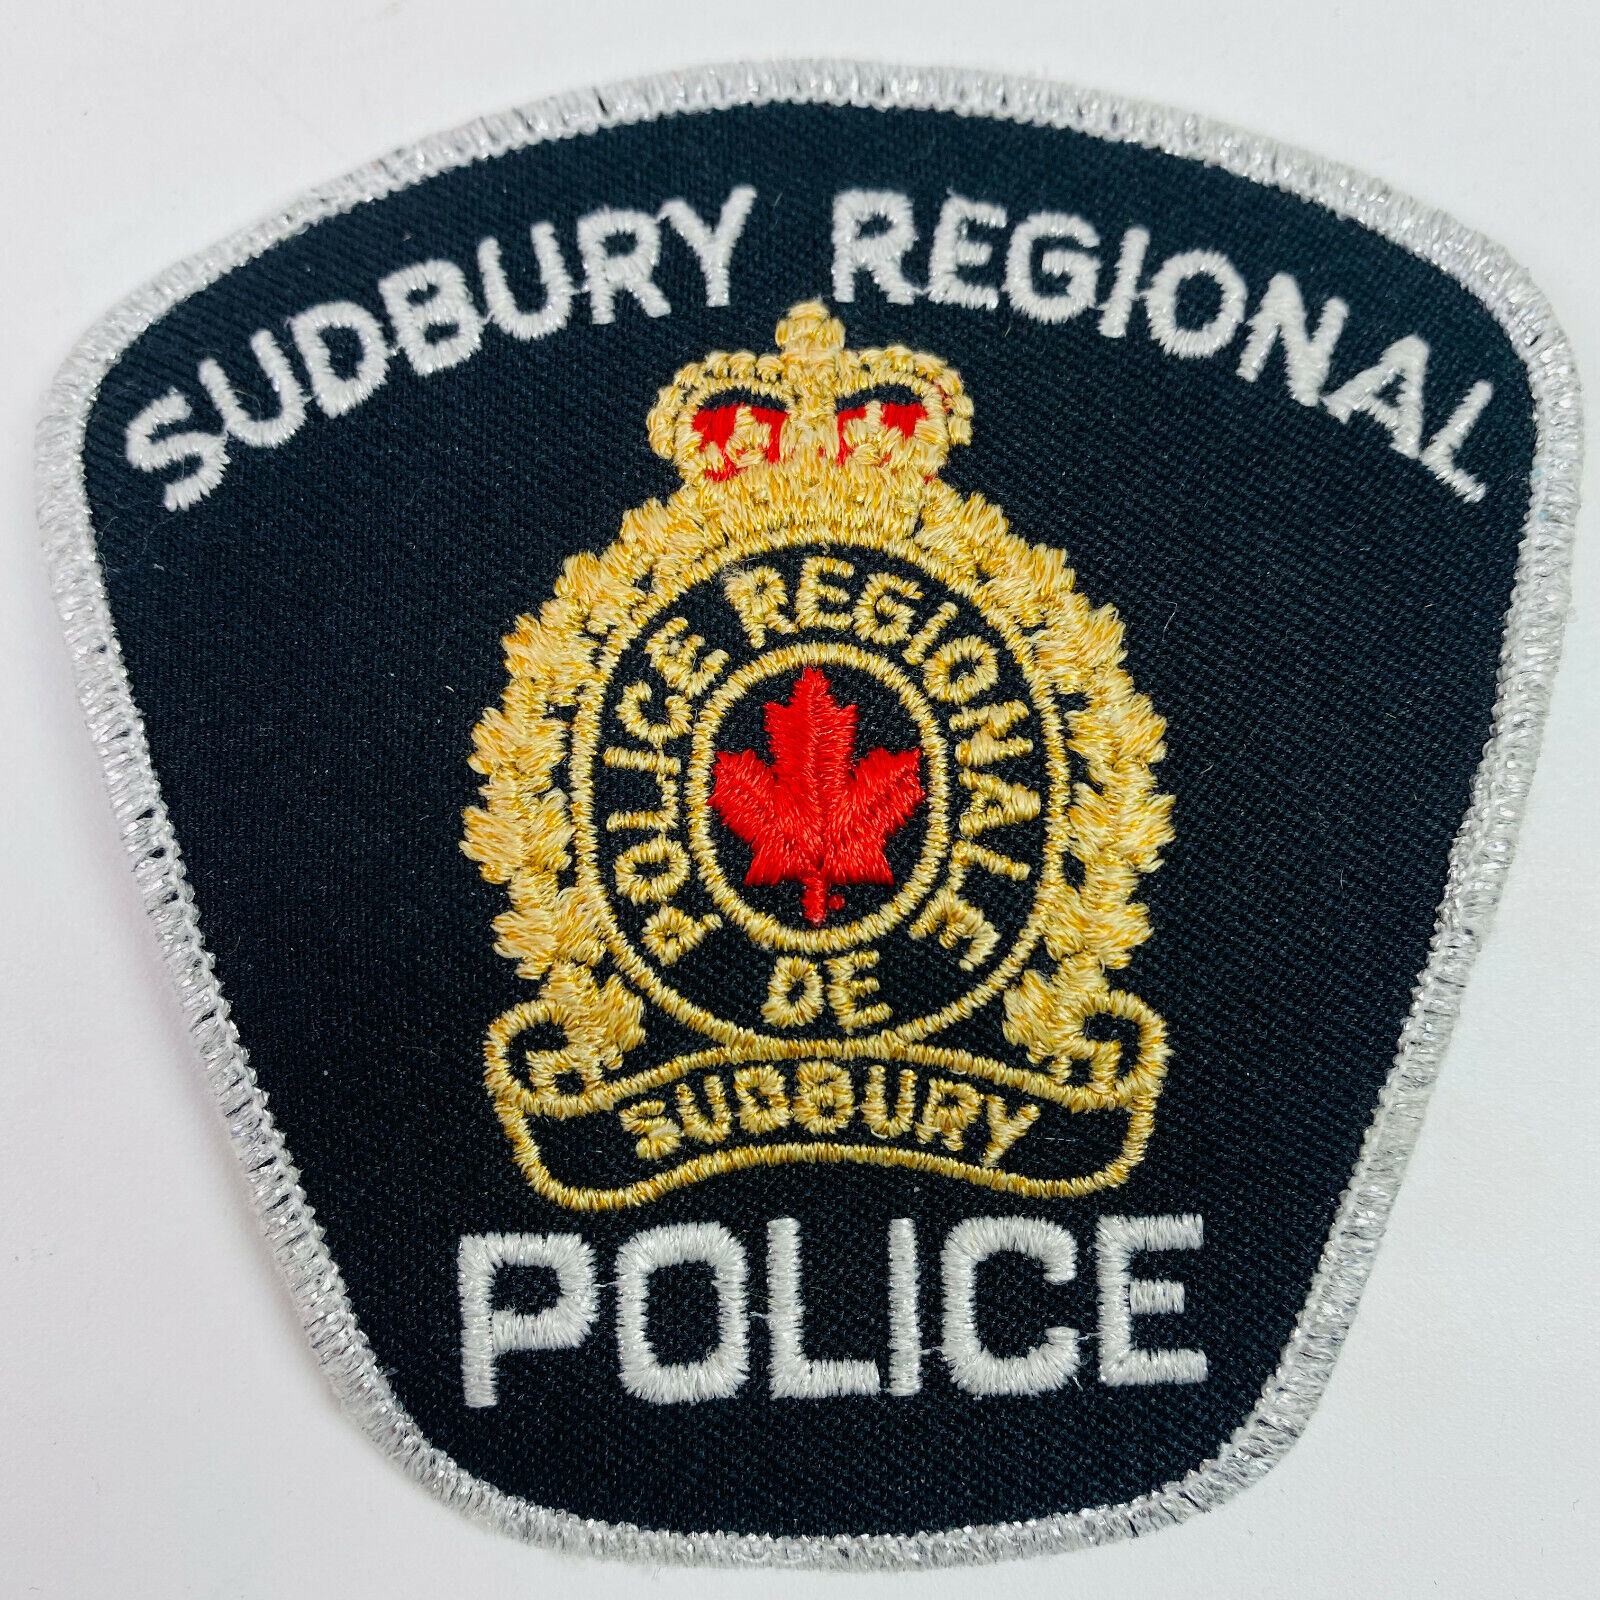 Sudbury Regional Canada Patch A3A